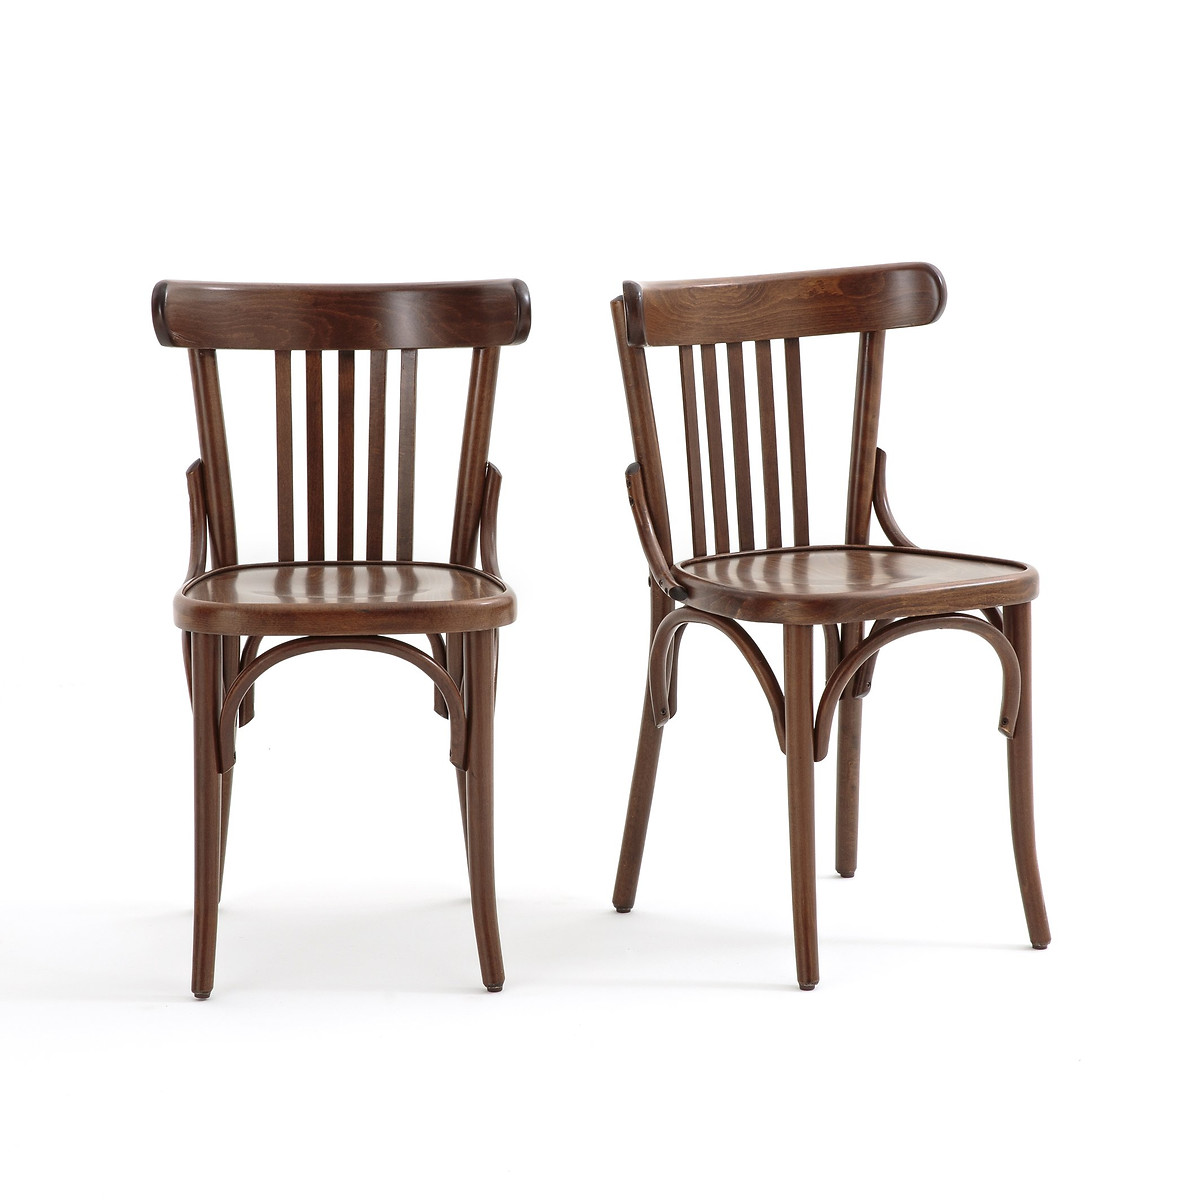 Комплект из двух стульев с перекладинами Bistro единый размер каштановый комплект из двух стульев с перекладинами bistro единый размер каштановый